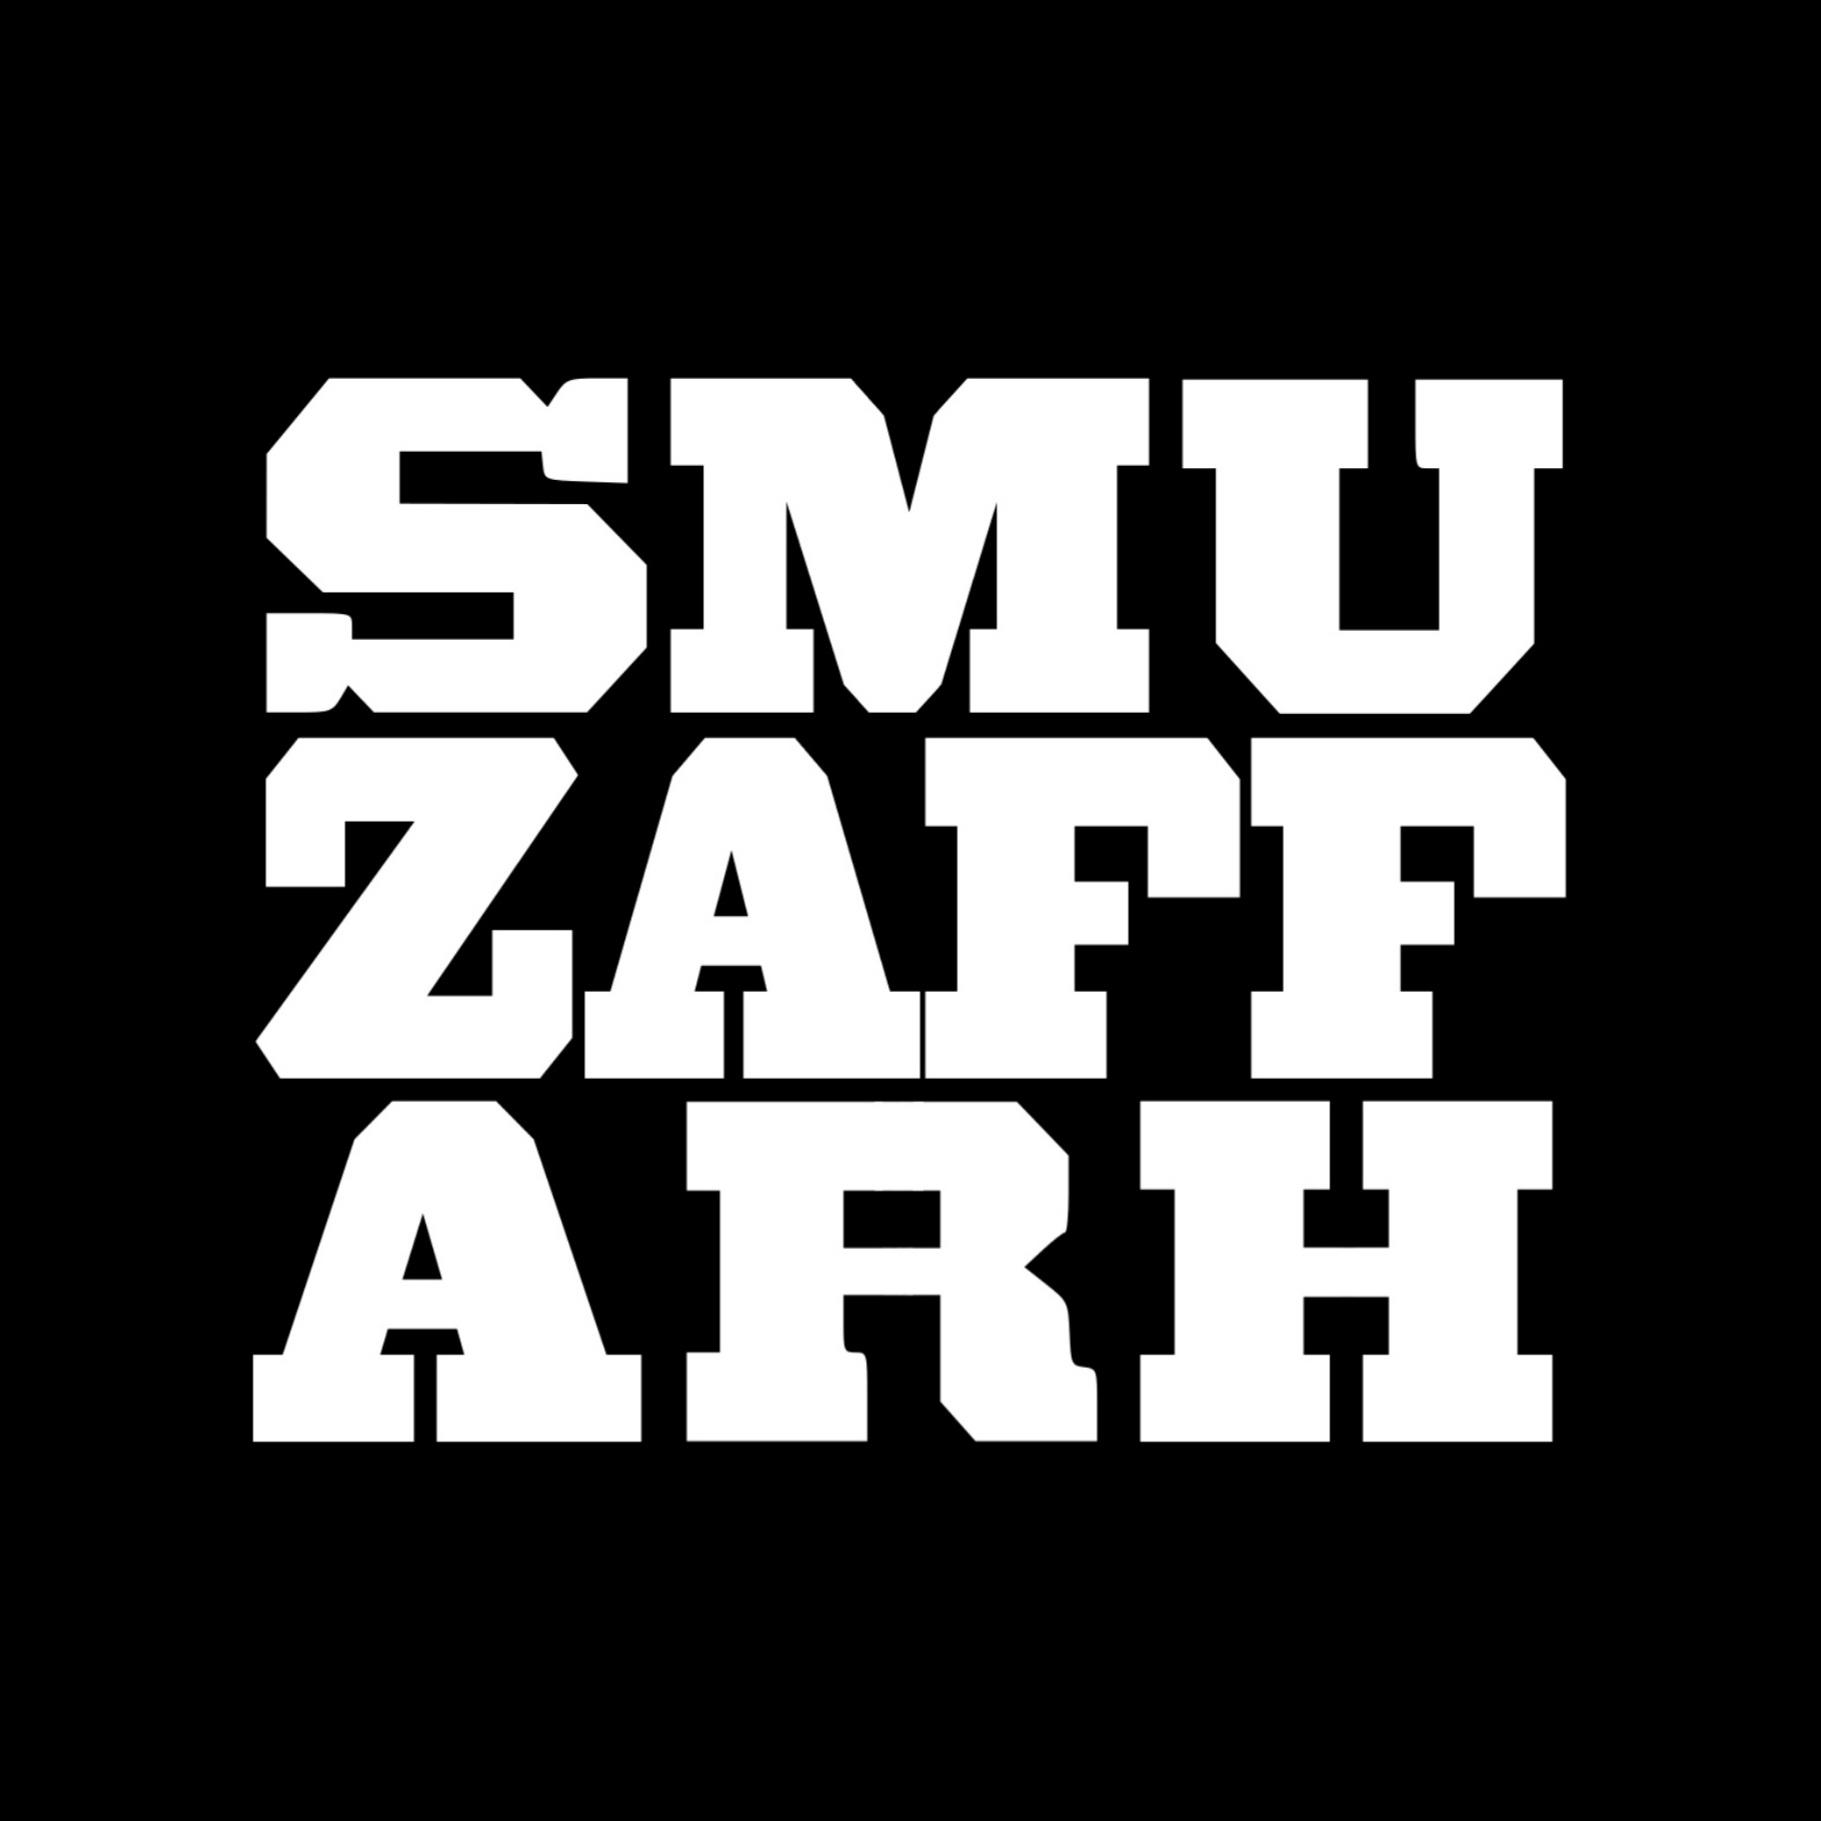 SMUZAFFARH